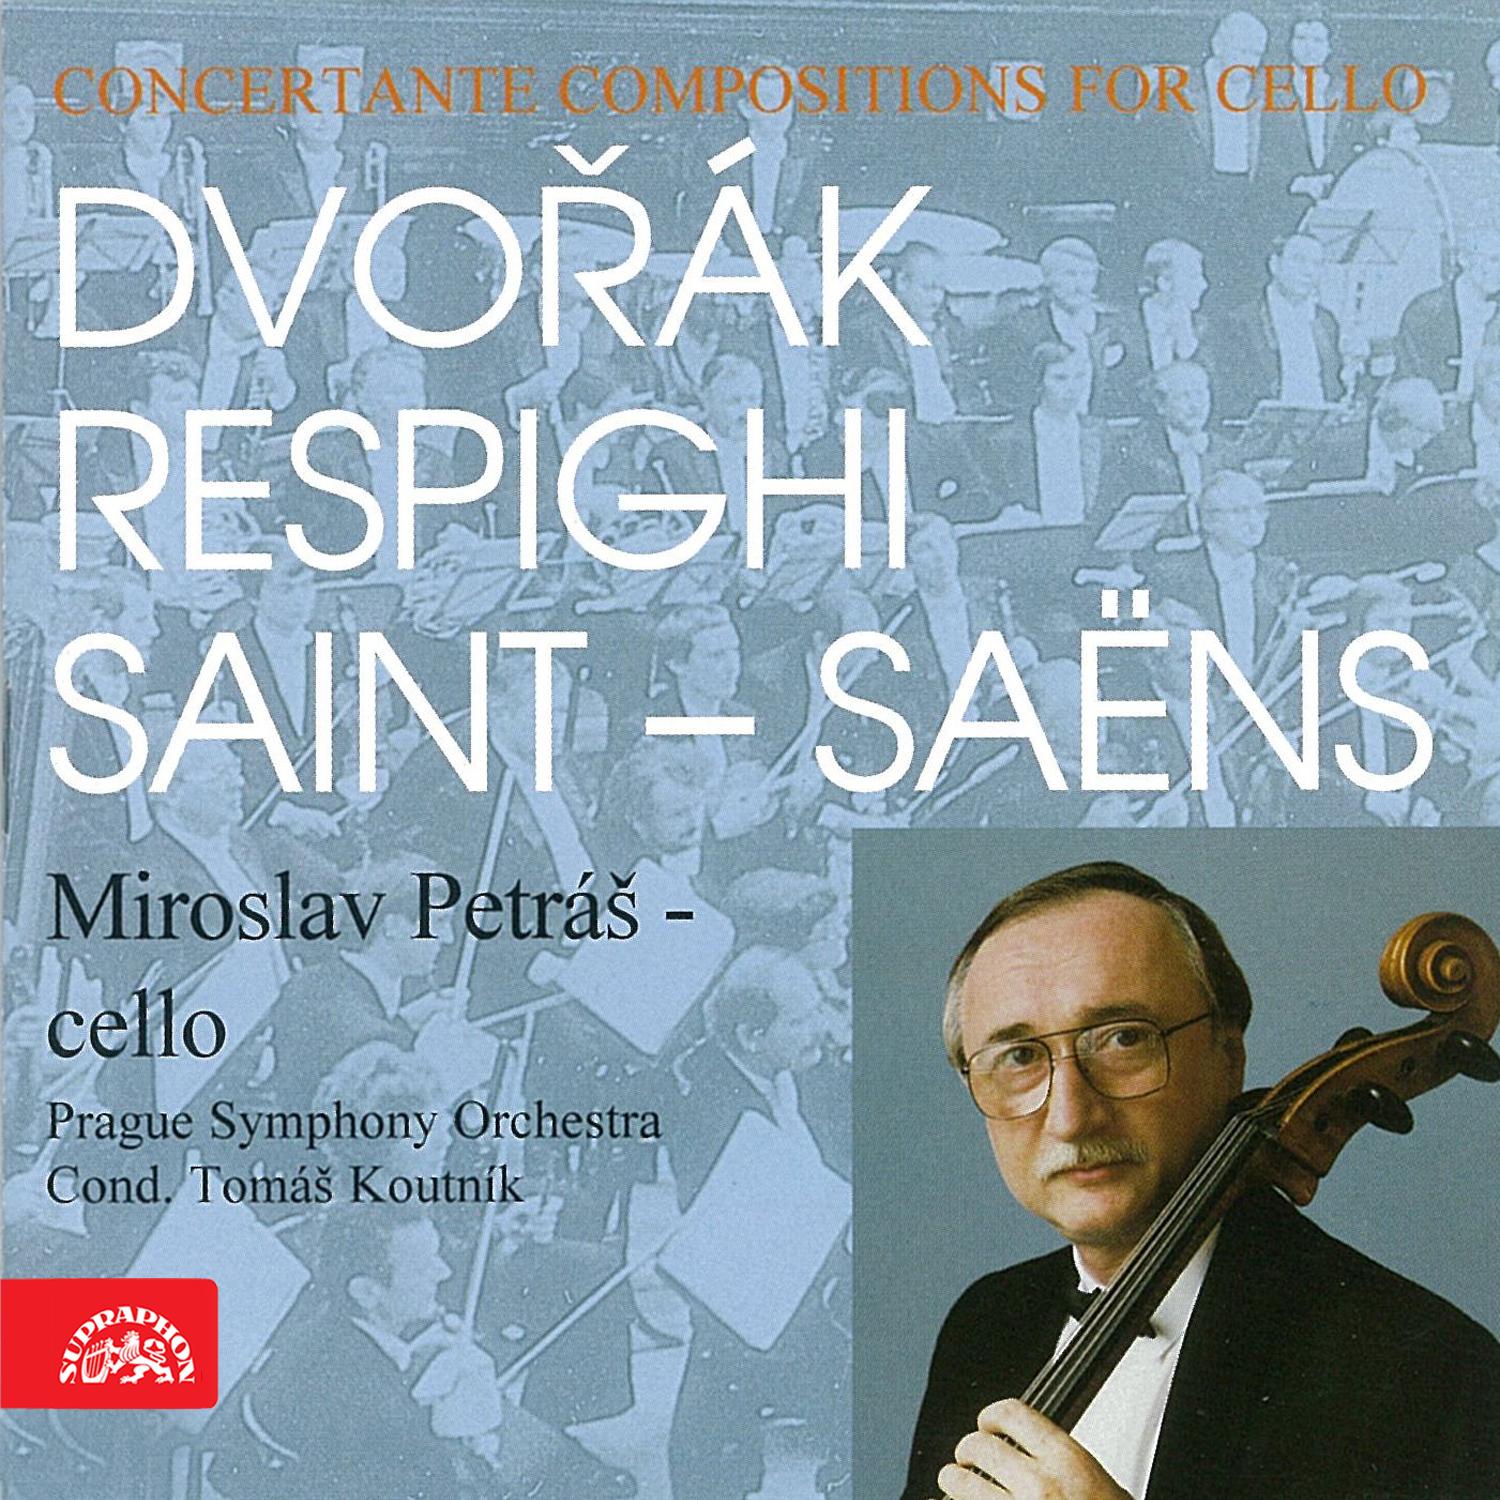 Dvoa k, Respighi, SaintSa ns: Concertante Compositions For Cello